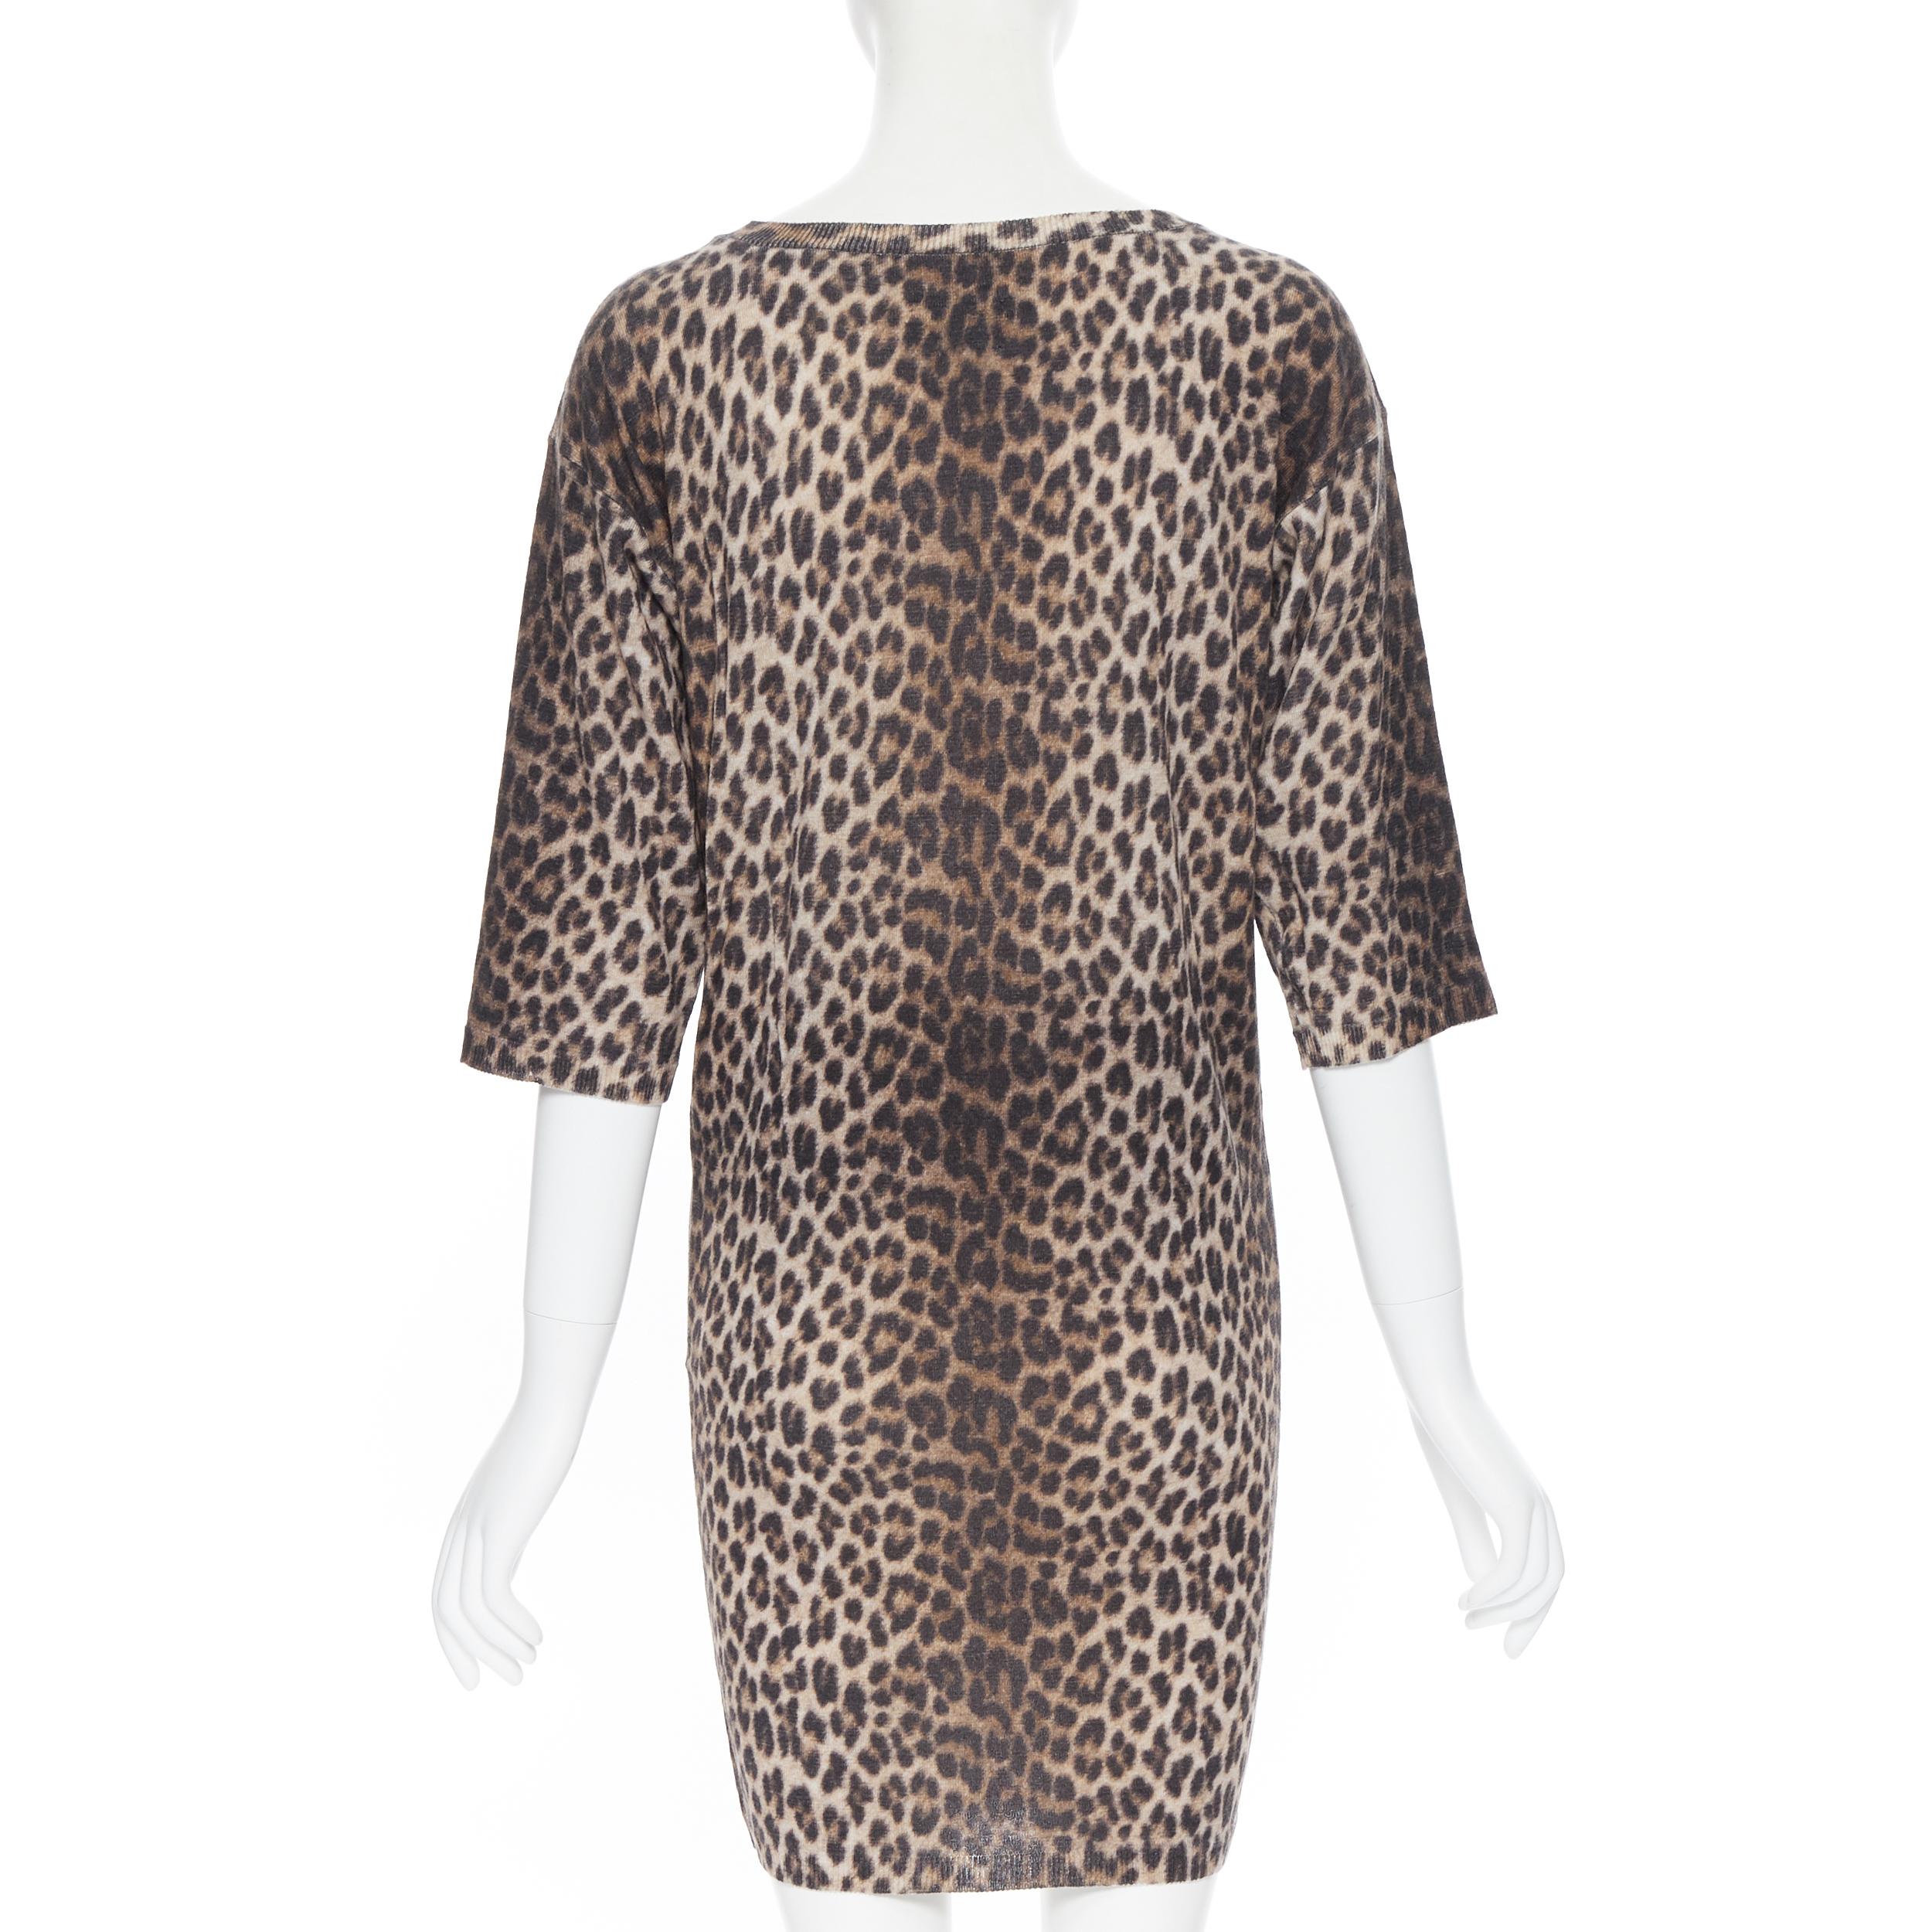 Women's LANVIN ELBAZ 2010 100% wool brown leopard spot 3/4 sleeve knit sweater dress XS